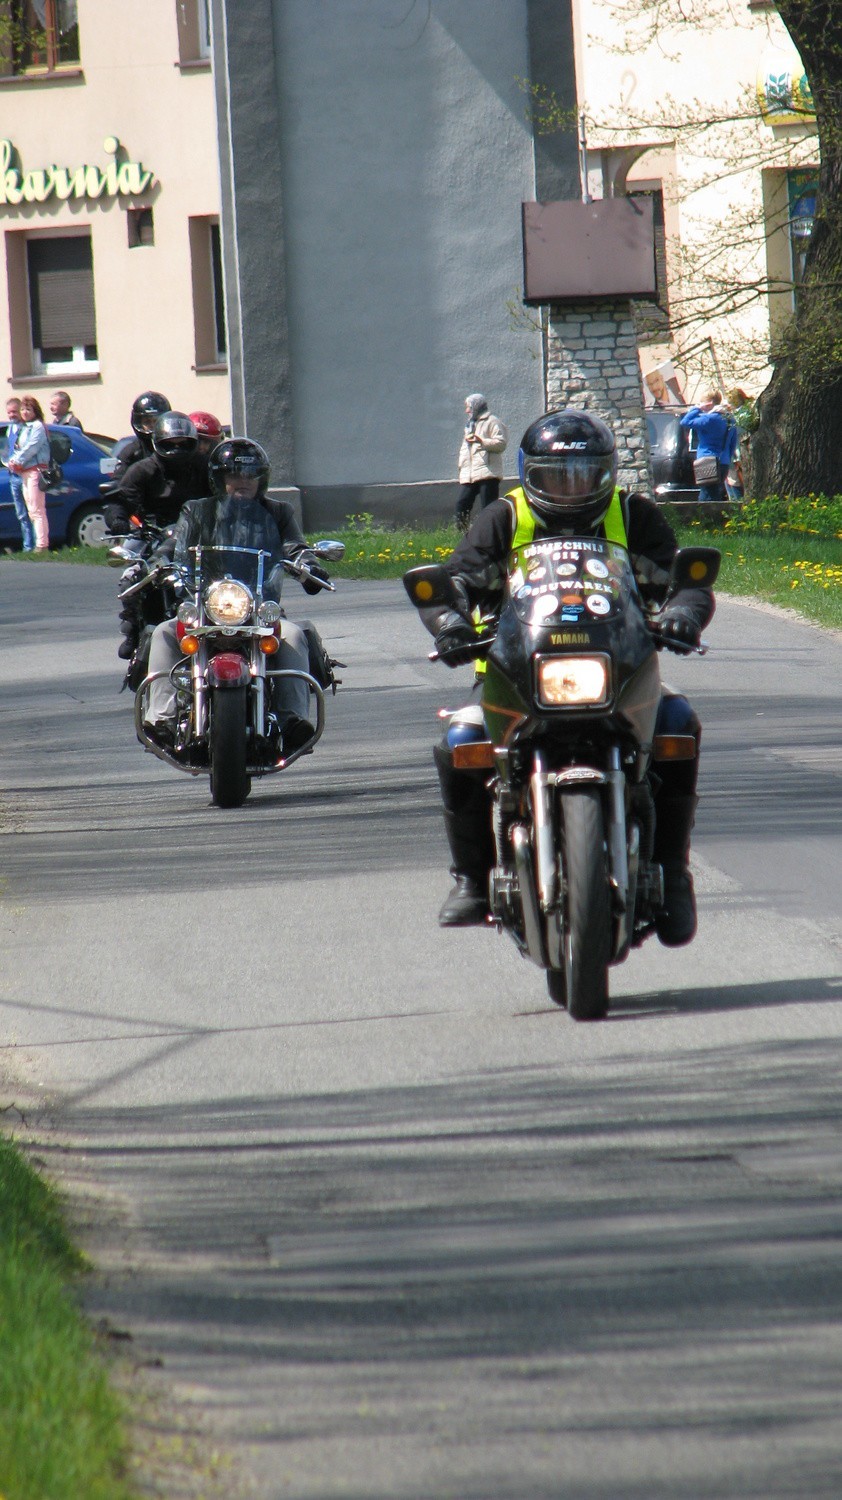 IV Zlot Motocyklowy w Krupskim Młynie